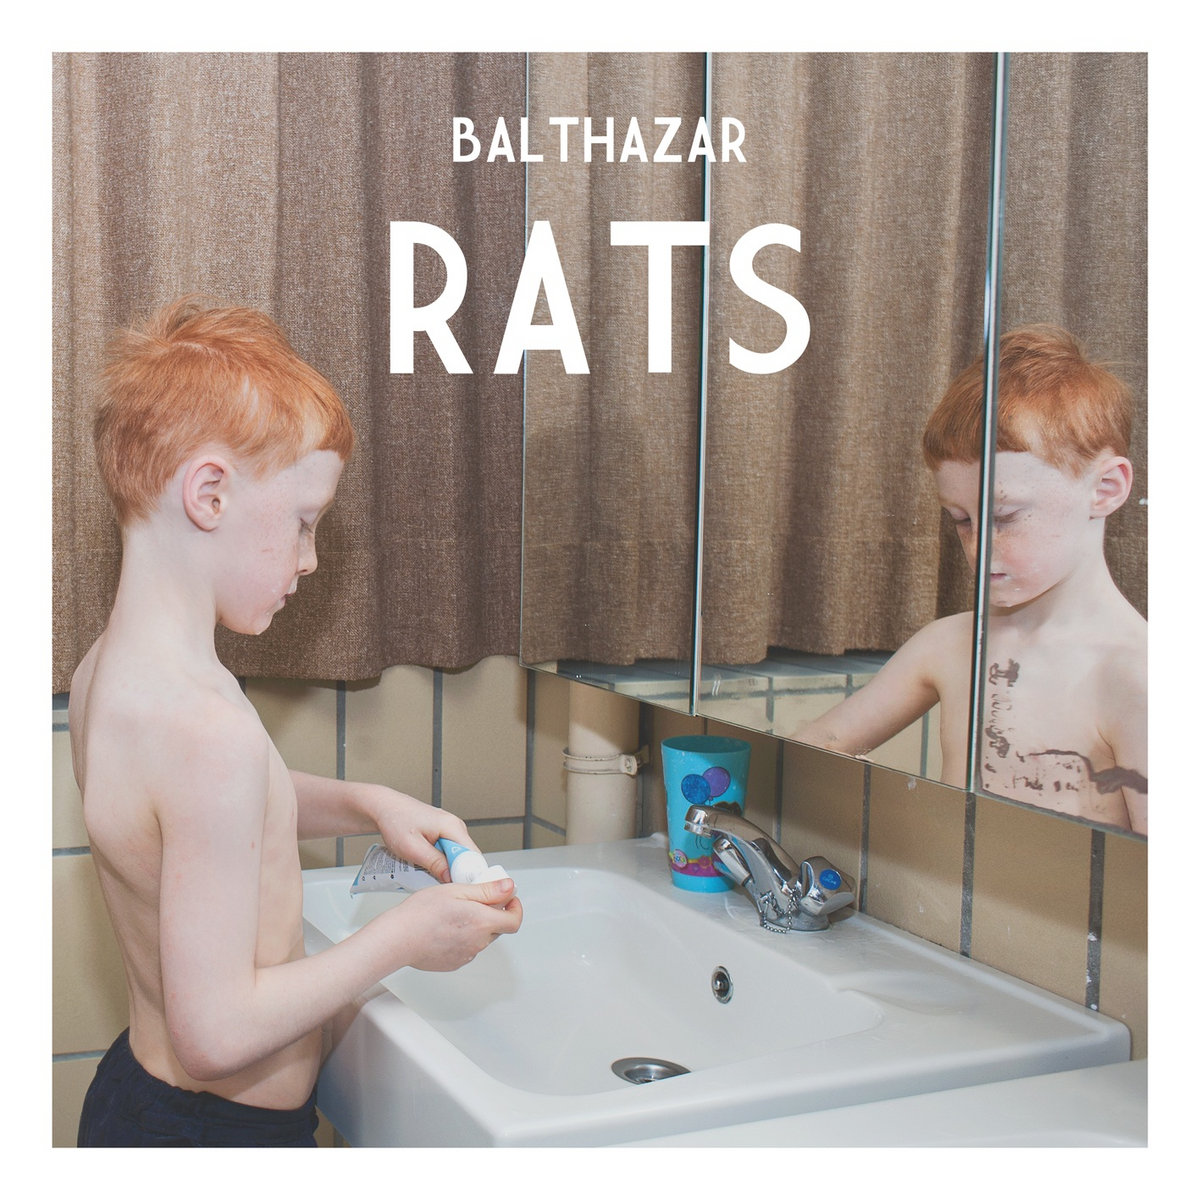 Balthazar - Rats (2012)